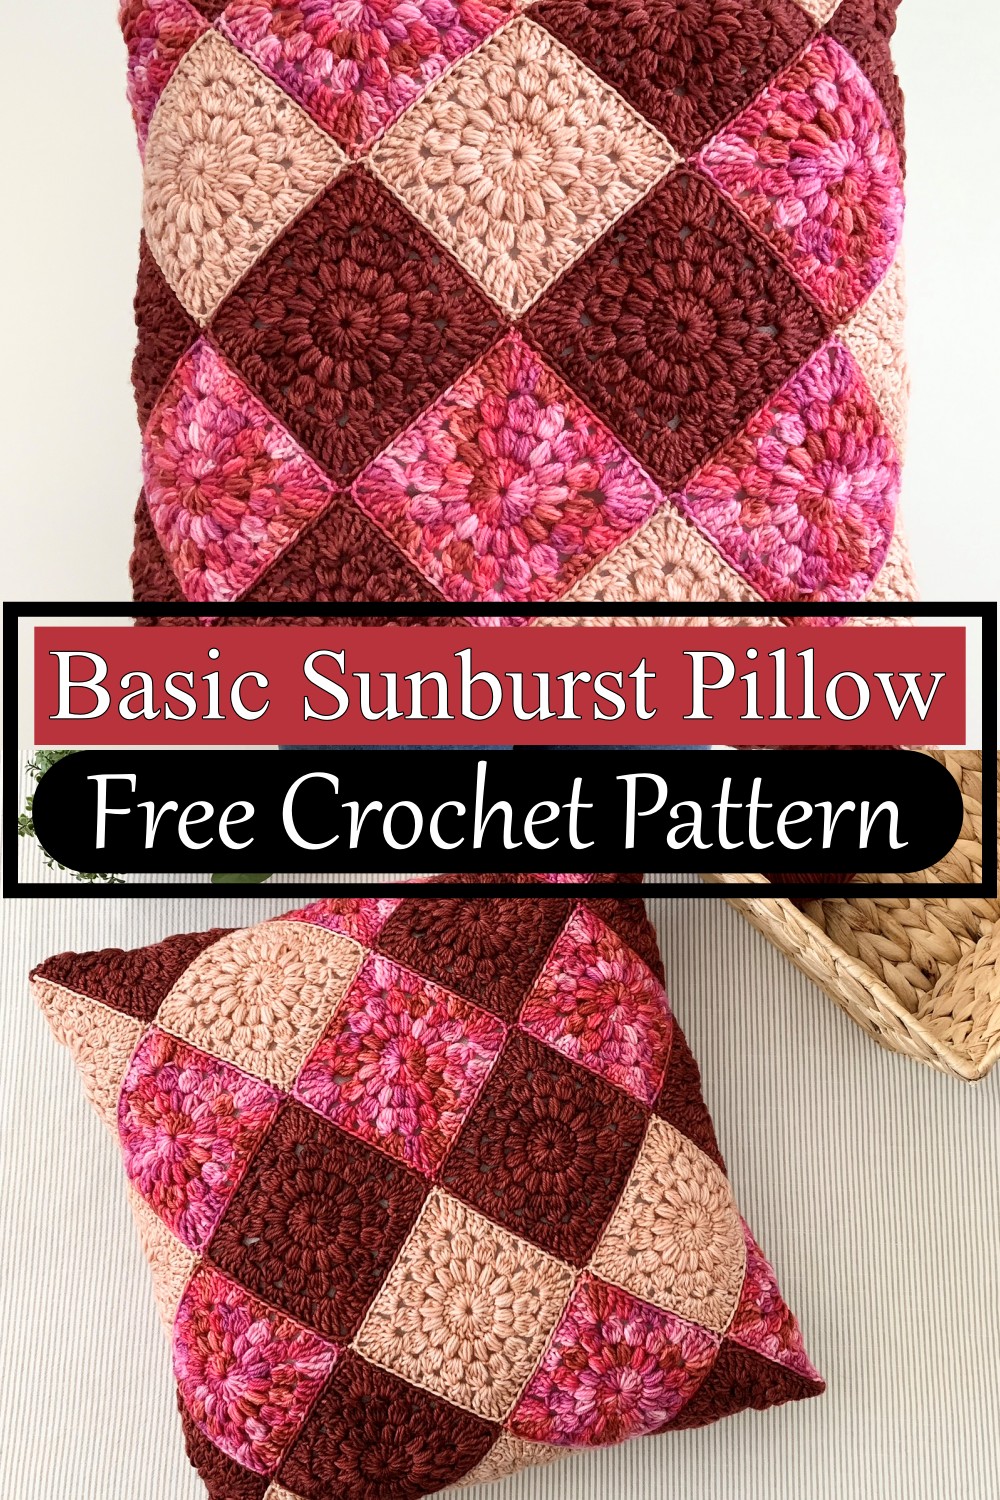 Basic Sunburst Pillow